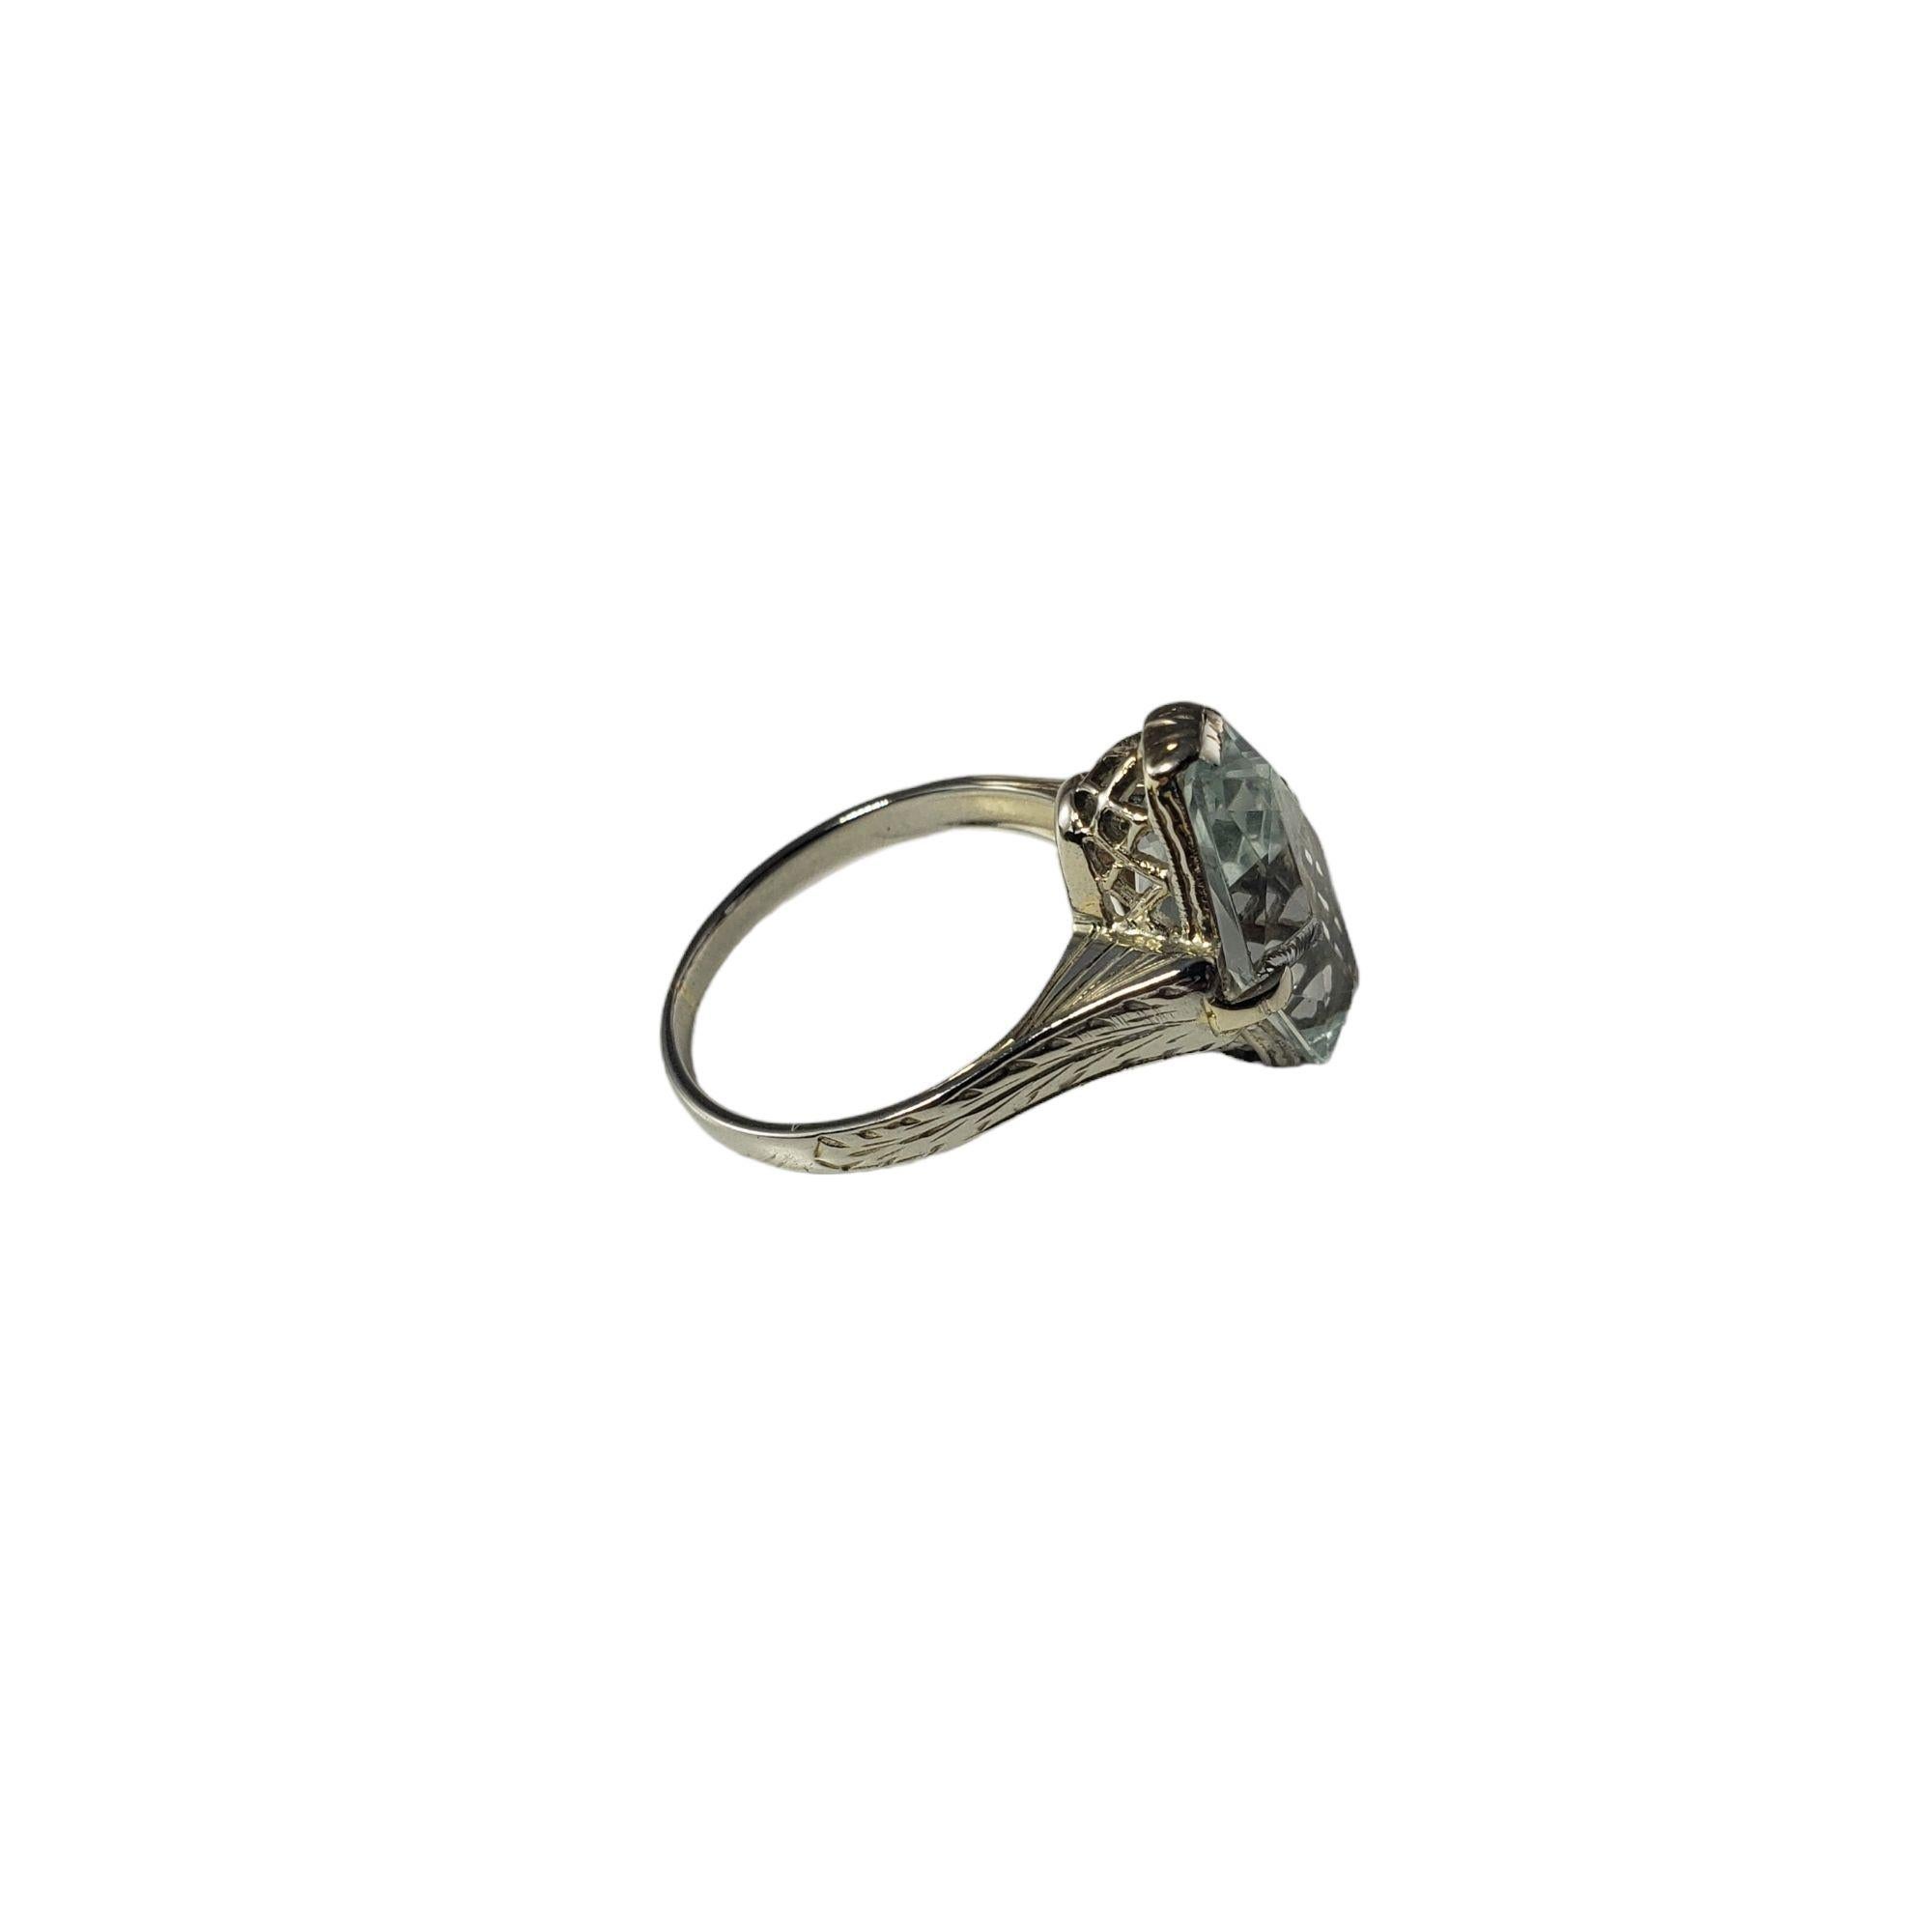 Vintage 14 Karat White Gold Aquamarine Ring Size 4.5 JAGi Certified-

Cette magnifique bague comporte une aigue-marine (14,2 mm x 8,4 mm) sertie dans de l'or blanc 14 carats aux détails magnifiques. Tige : 2 mm.

Poids de l'aigue-marine : 2.62